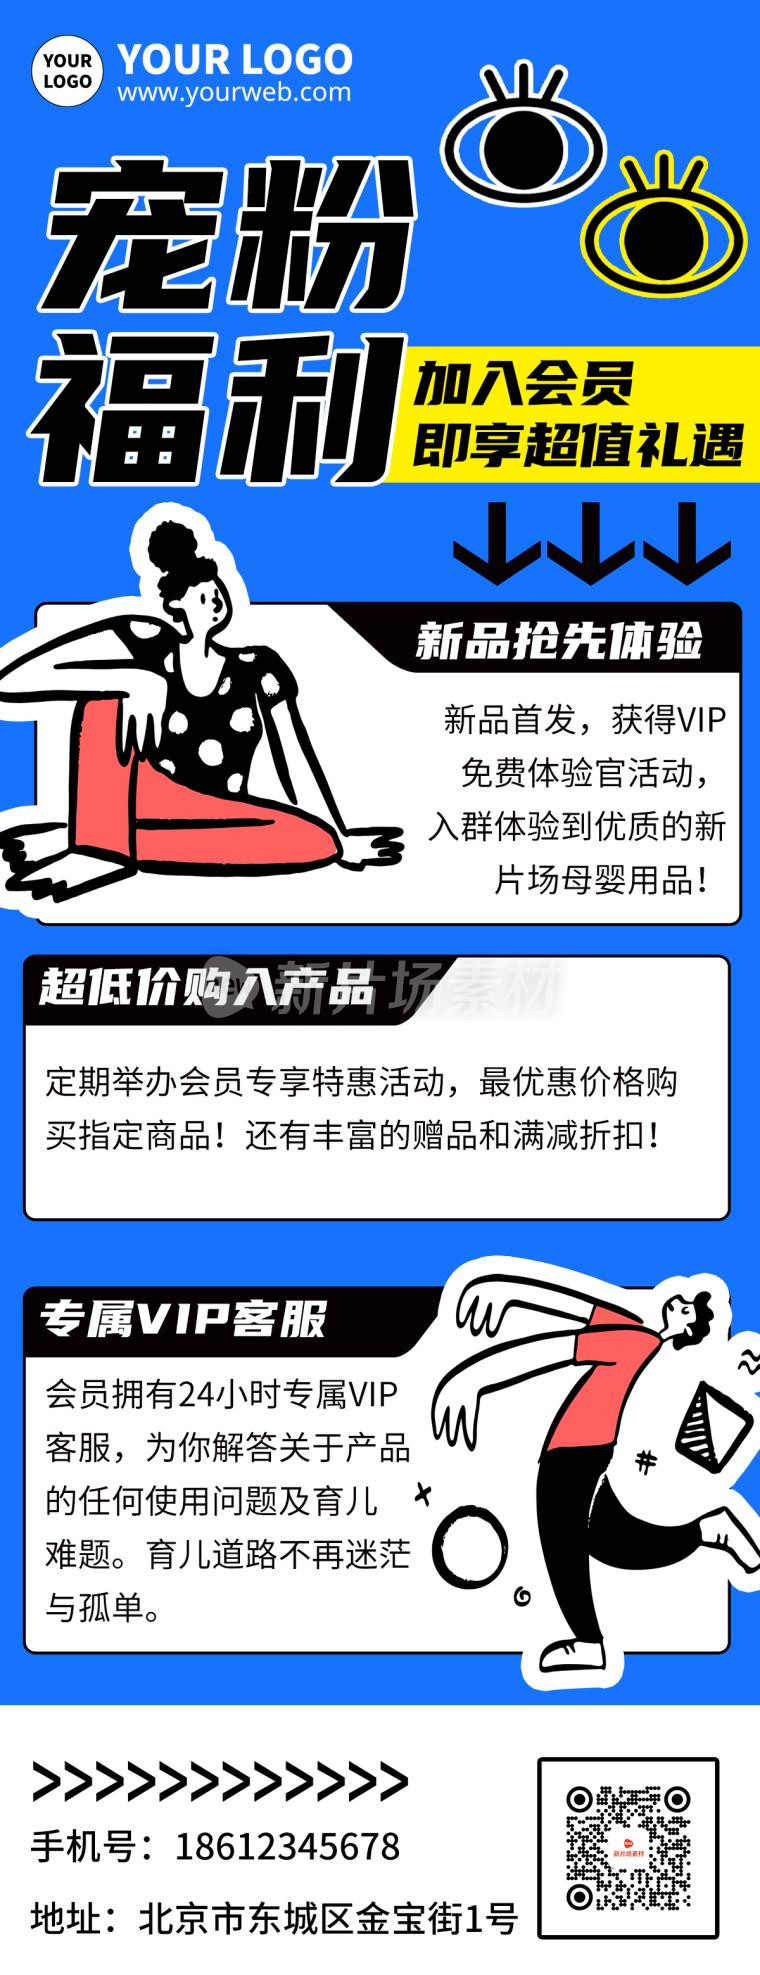 宠粉福利宣传促销营销手机海报长图